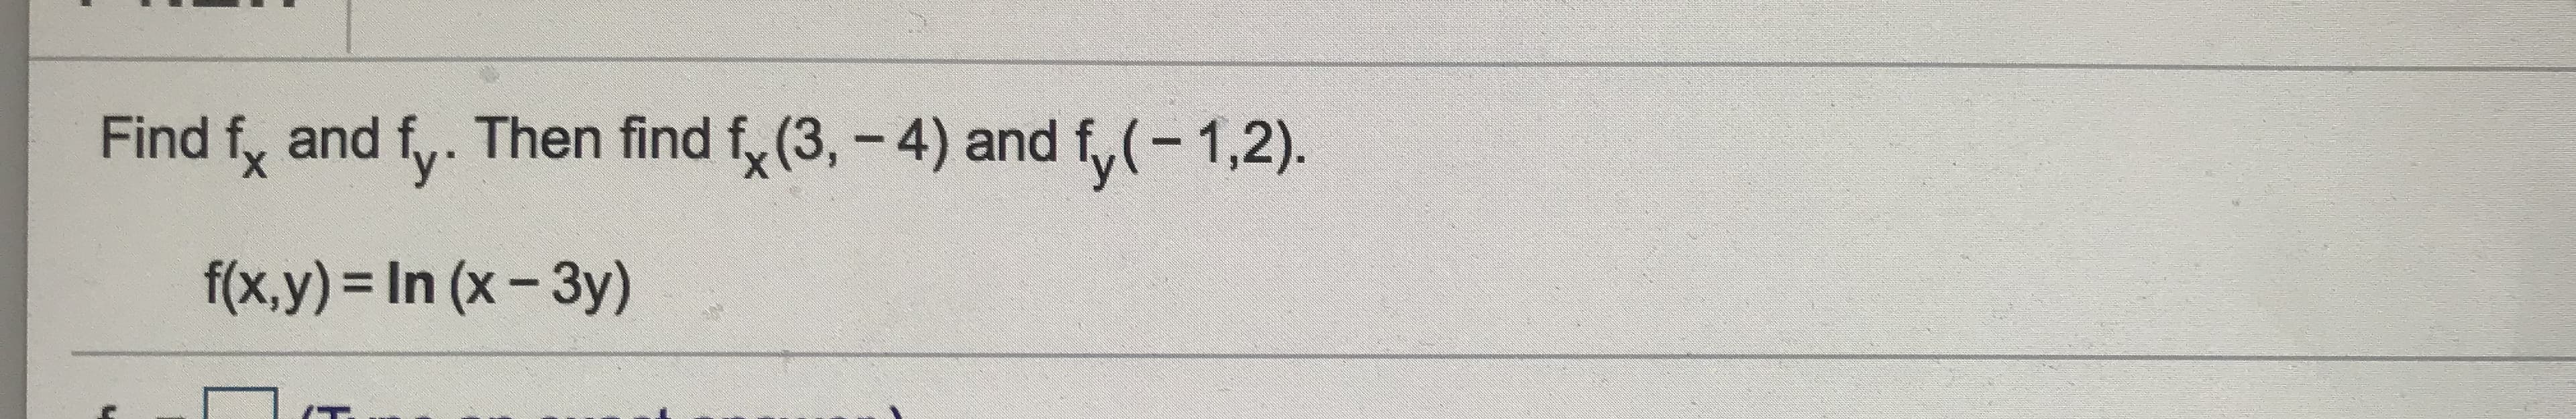 Find f, and f,. Then find f, (3, - 4) and f,(-1,2).
f(x,y)%3DIN (x-3y)
